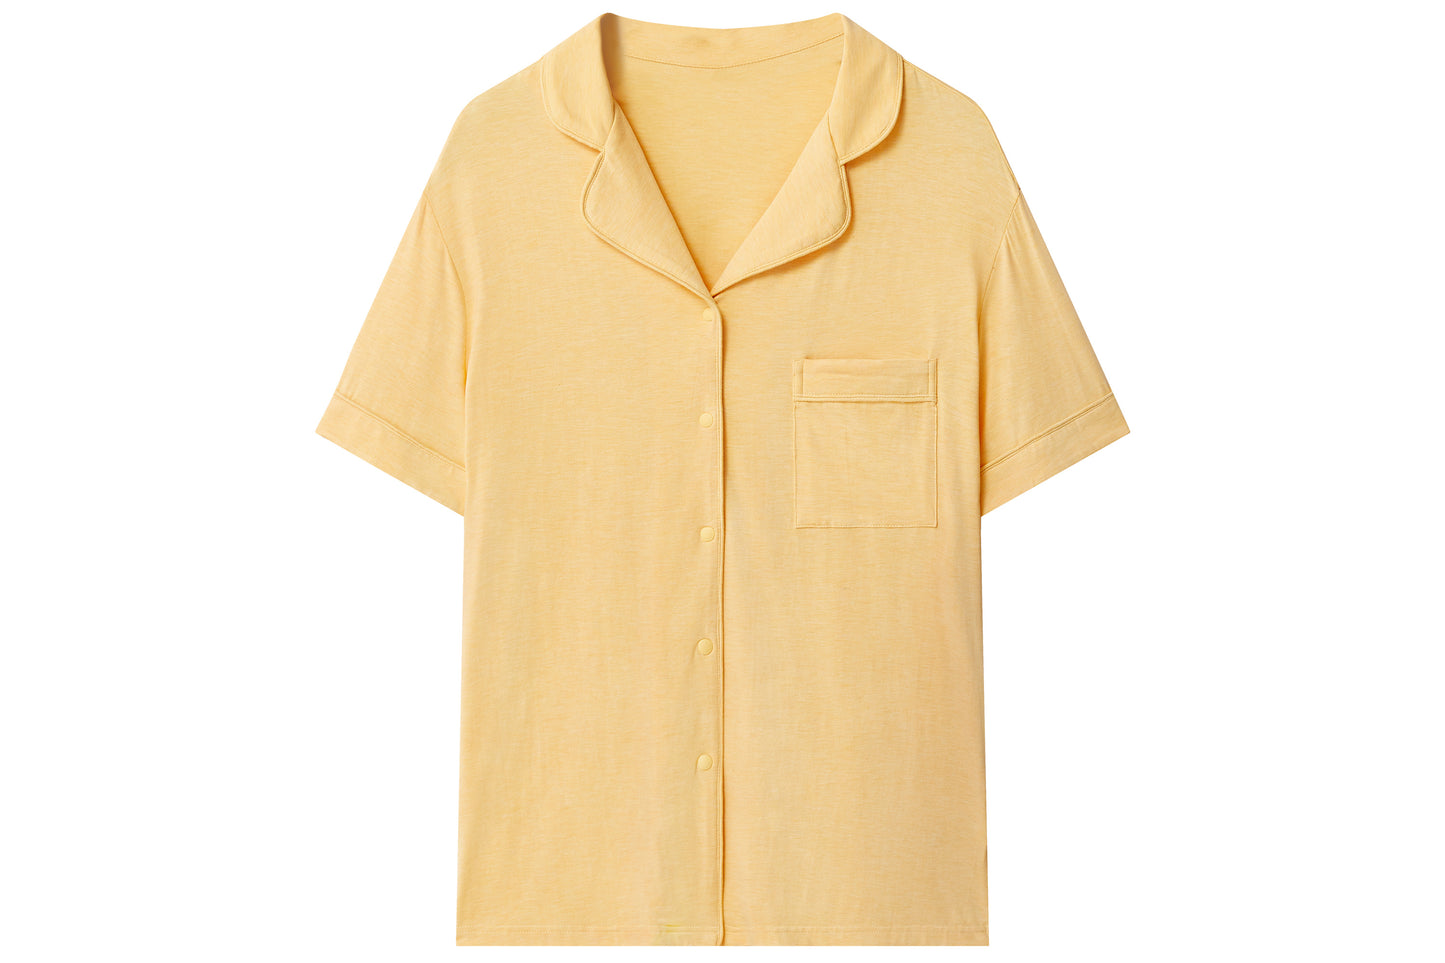 Women's Short Sleeve Button-Up Shirt (Bamboo Jersey) - Pantone Sunset Gold